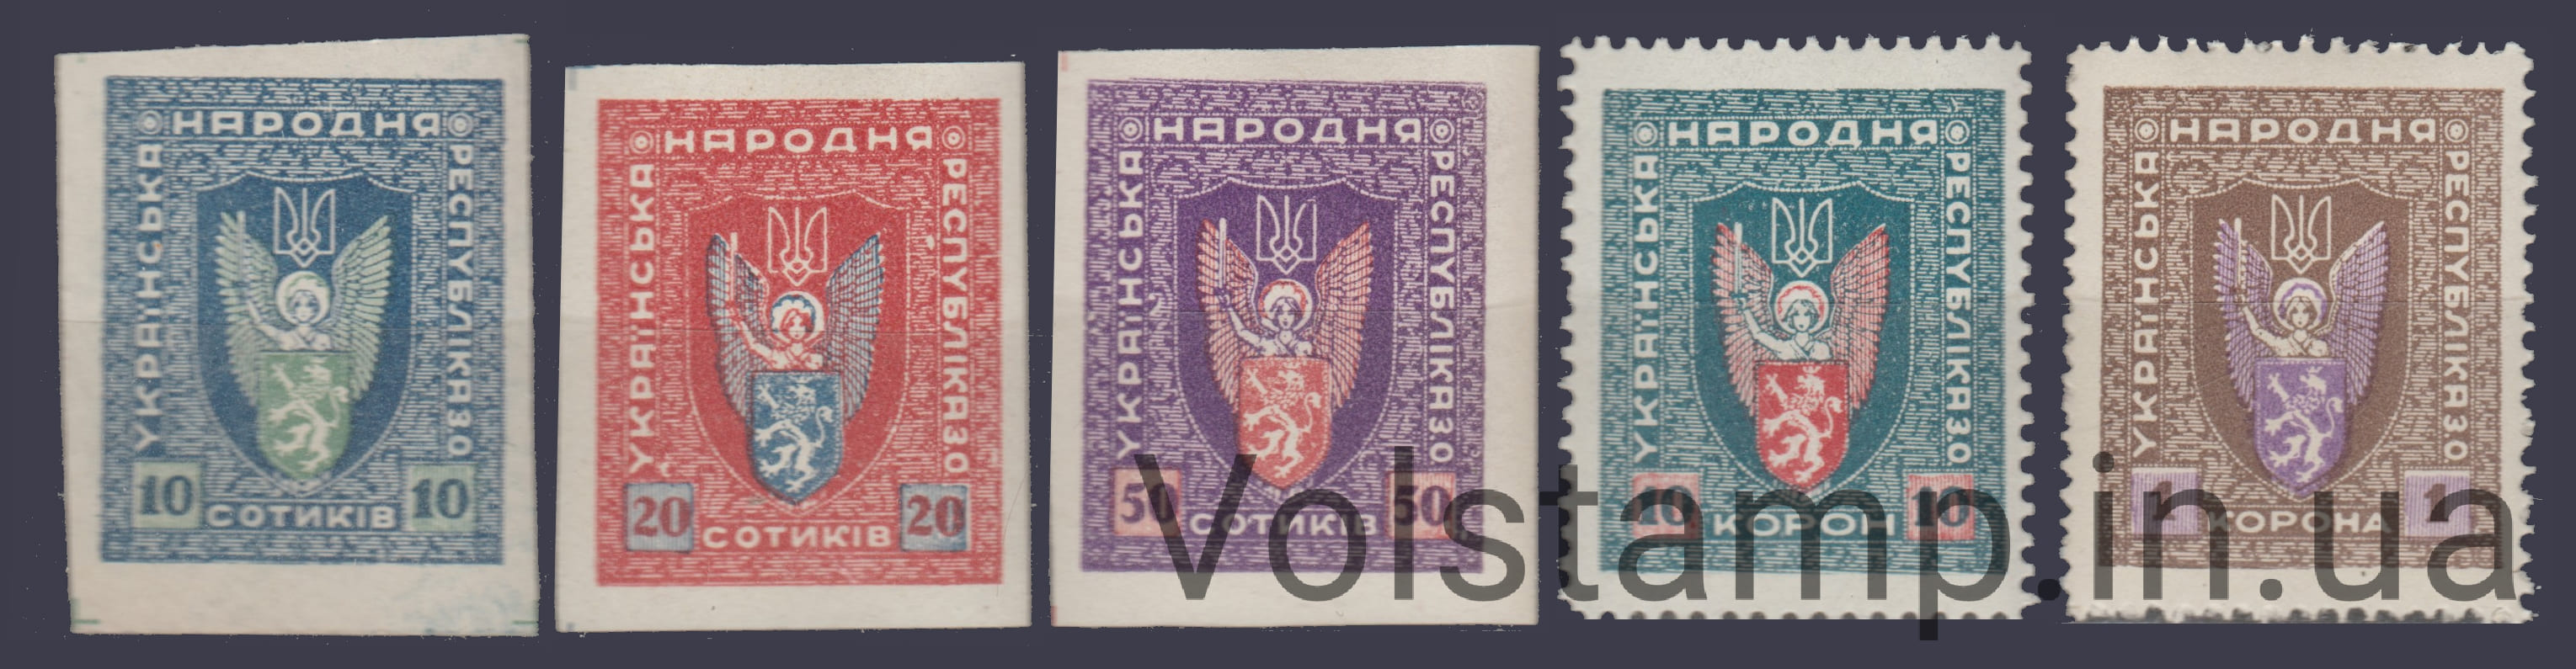 1919 Серия марок УНР Западная область - Украинская Народная Республика MNH